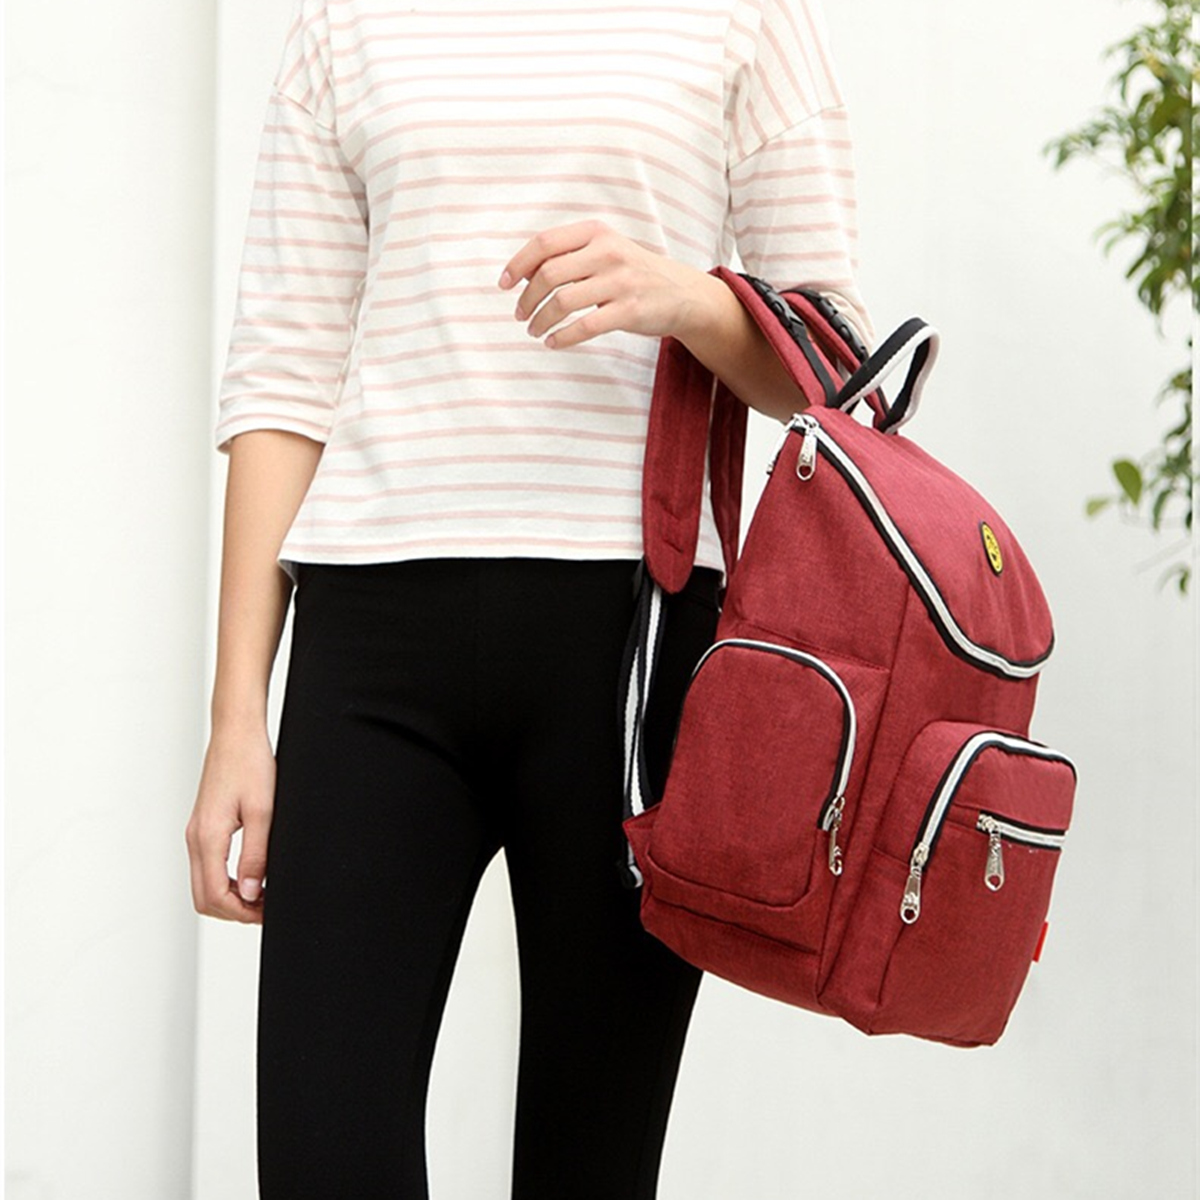 Multifunction-Mummy-Backpack-Stroller-Nappy-Storage-Bag-Shoulder-Bag-Travel-Baby-Handbag-1865828-10